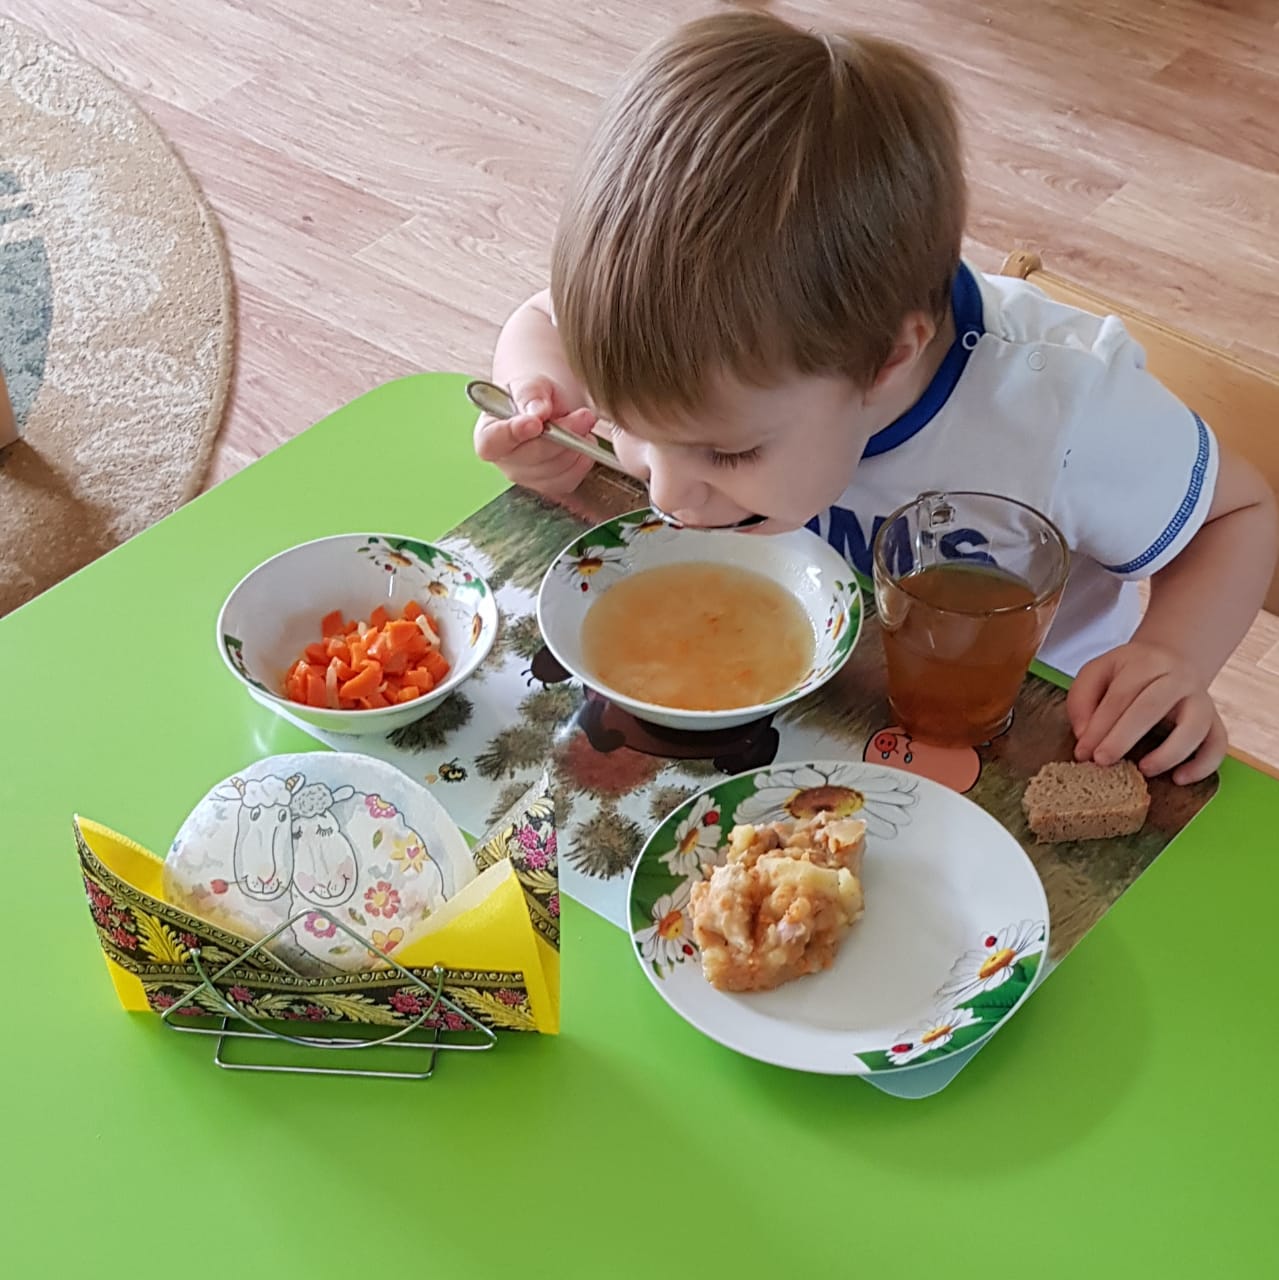 Что едят в садике. Еда в детском саду. Сервировка обеда в детском саду. Питание в детском саду. Обед в детском саду.